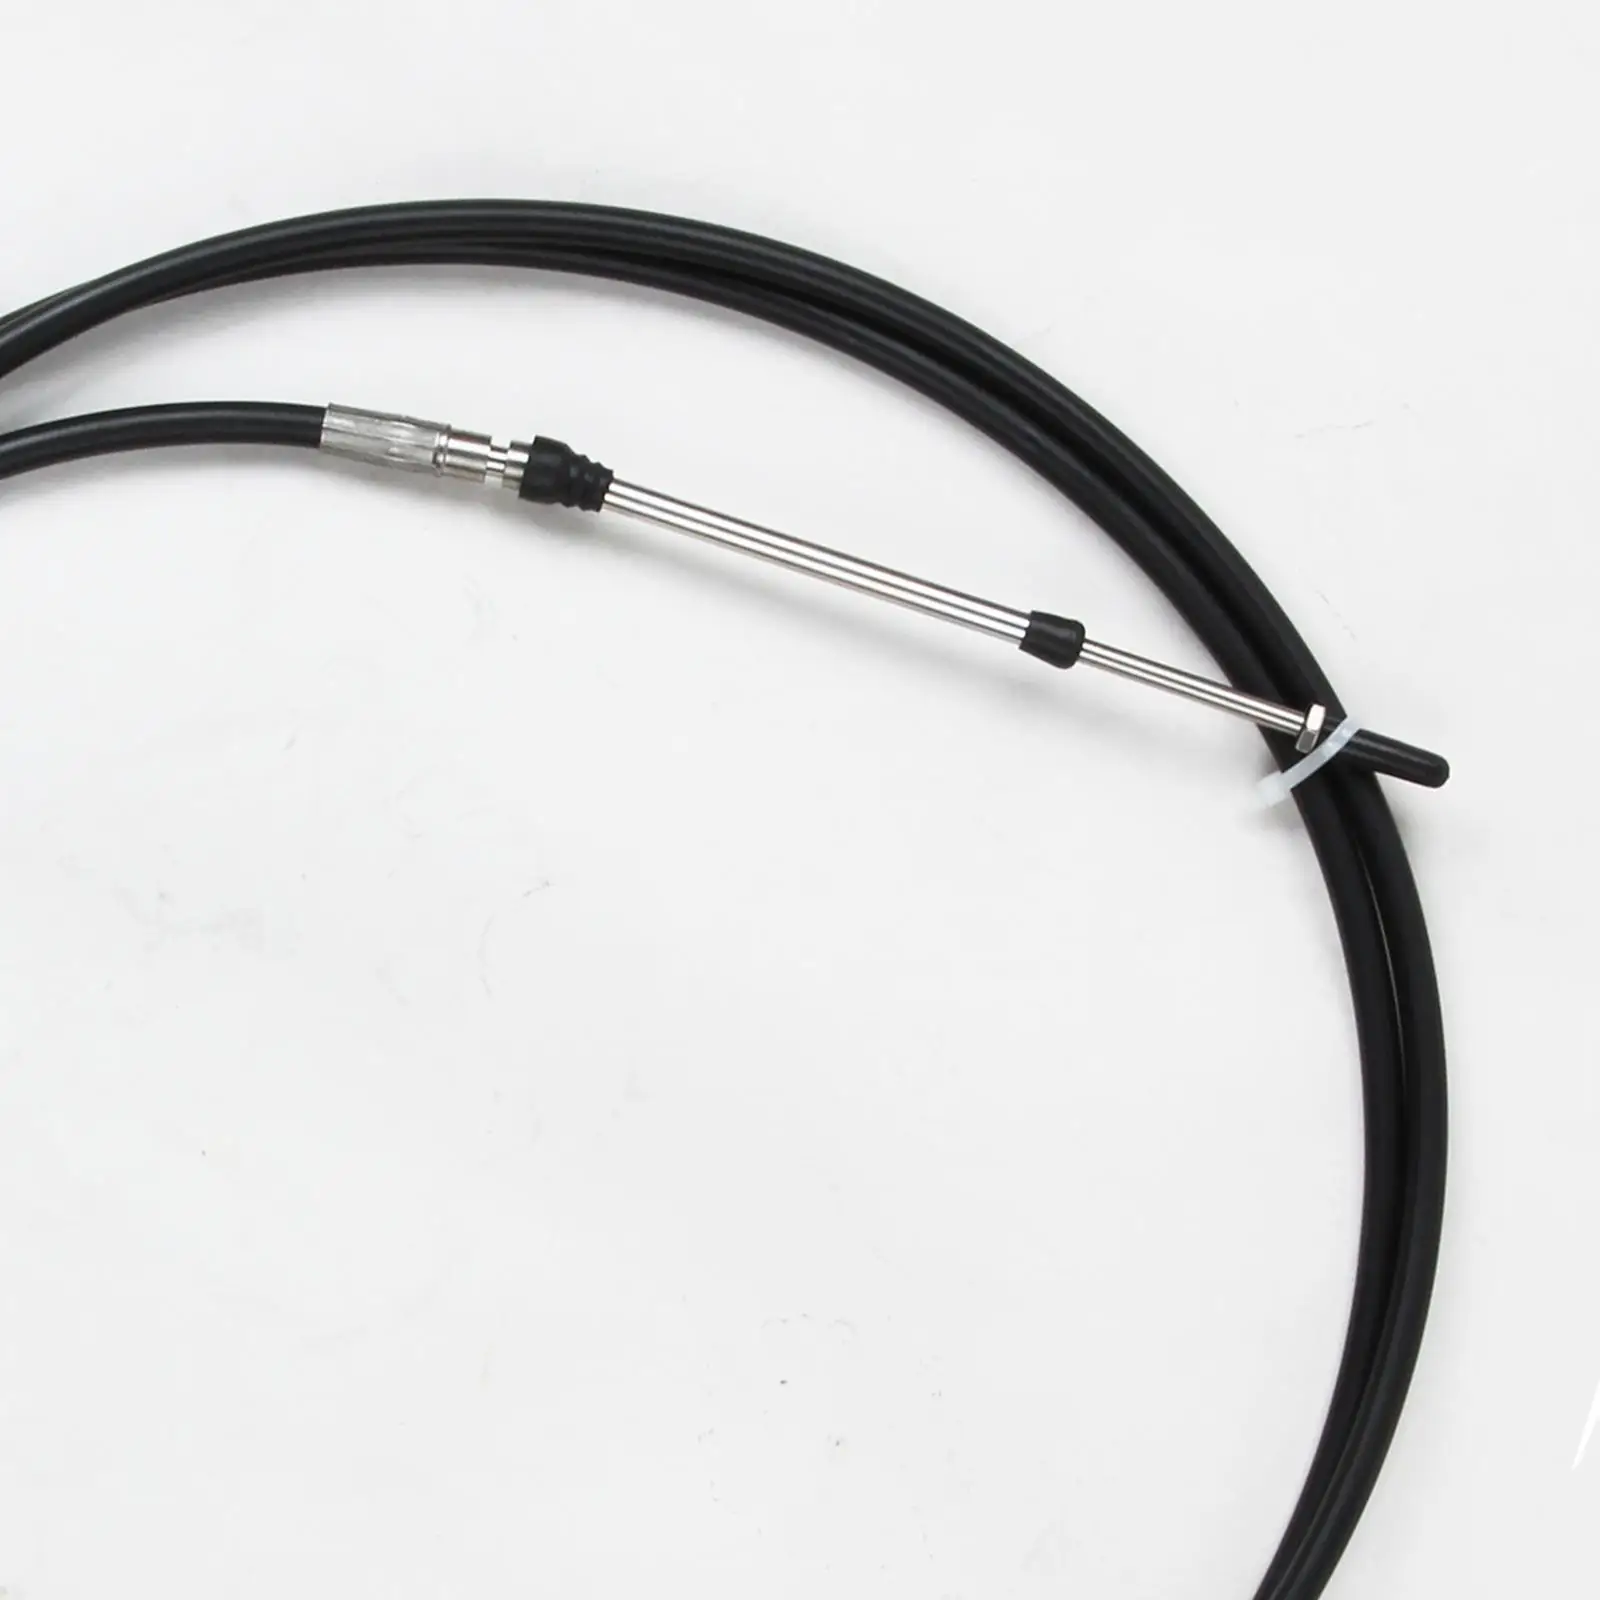 

Универсальный черный кабель дроссельной заслонки для рычага управления лодочным мотором длиной 18 футов